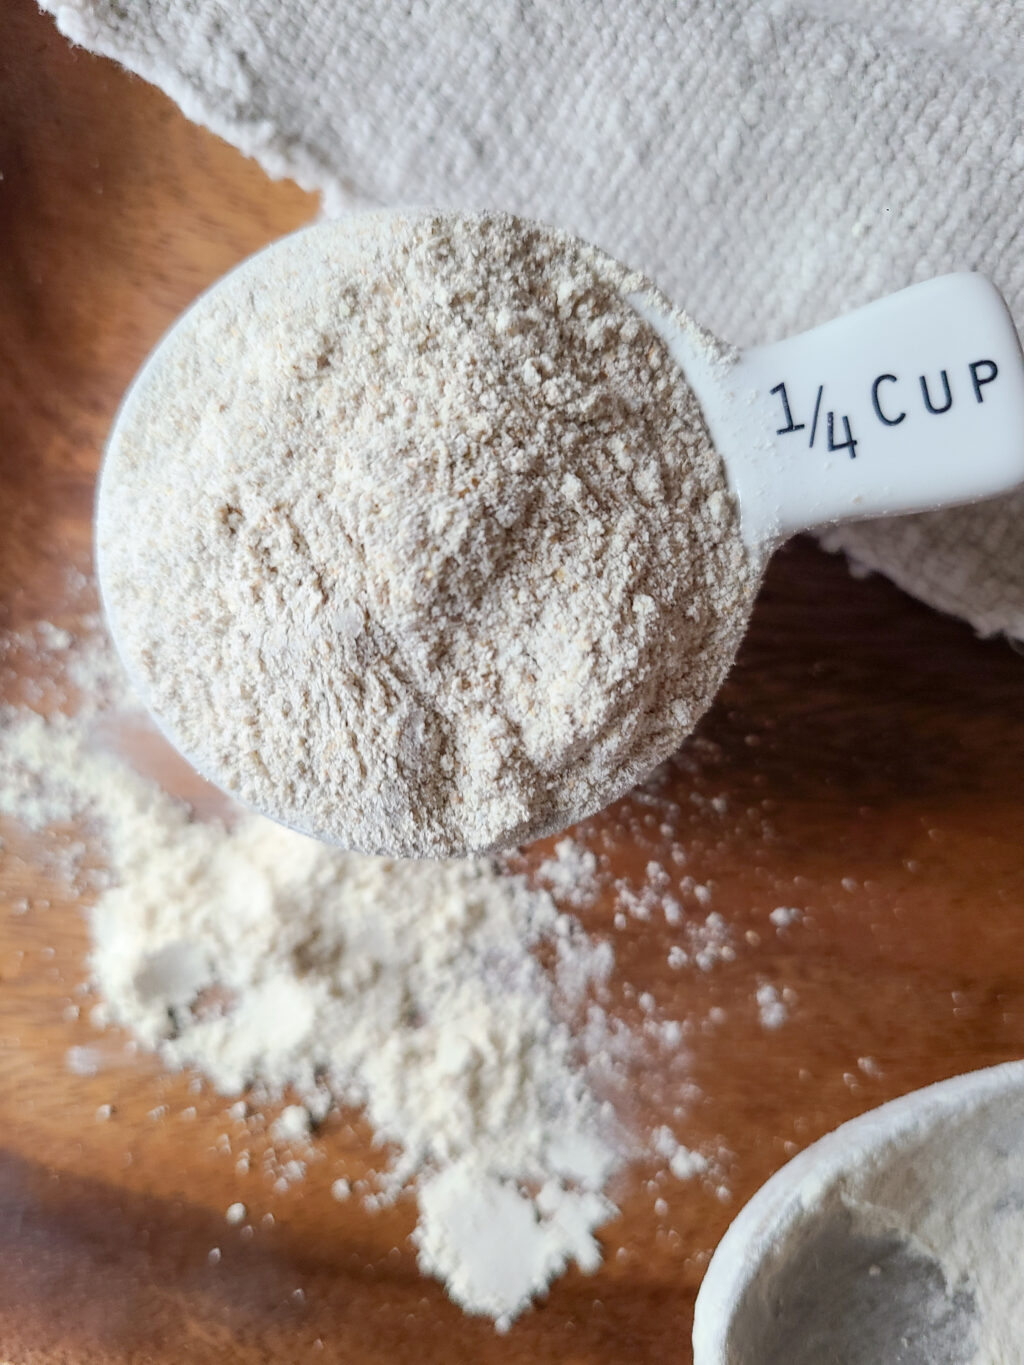 EinkornFlour_Raw.jpg; Organic Einkorn Flour